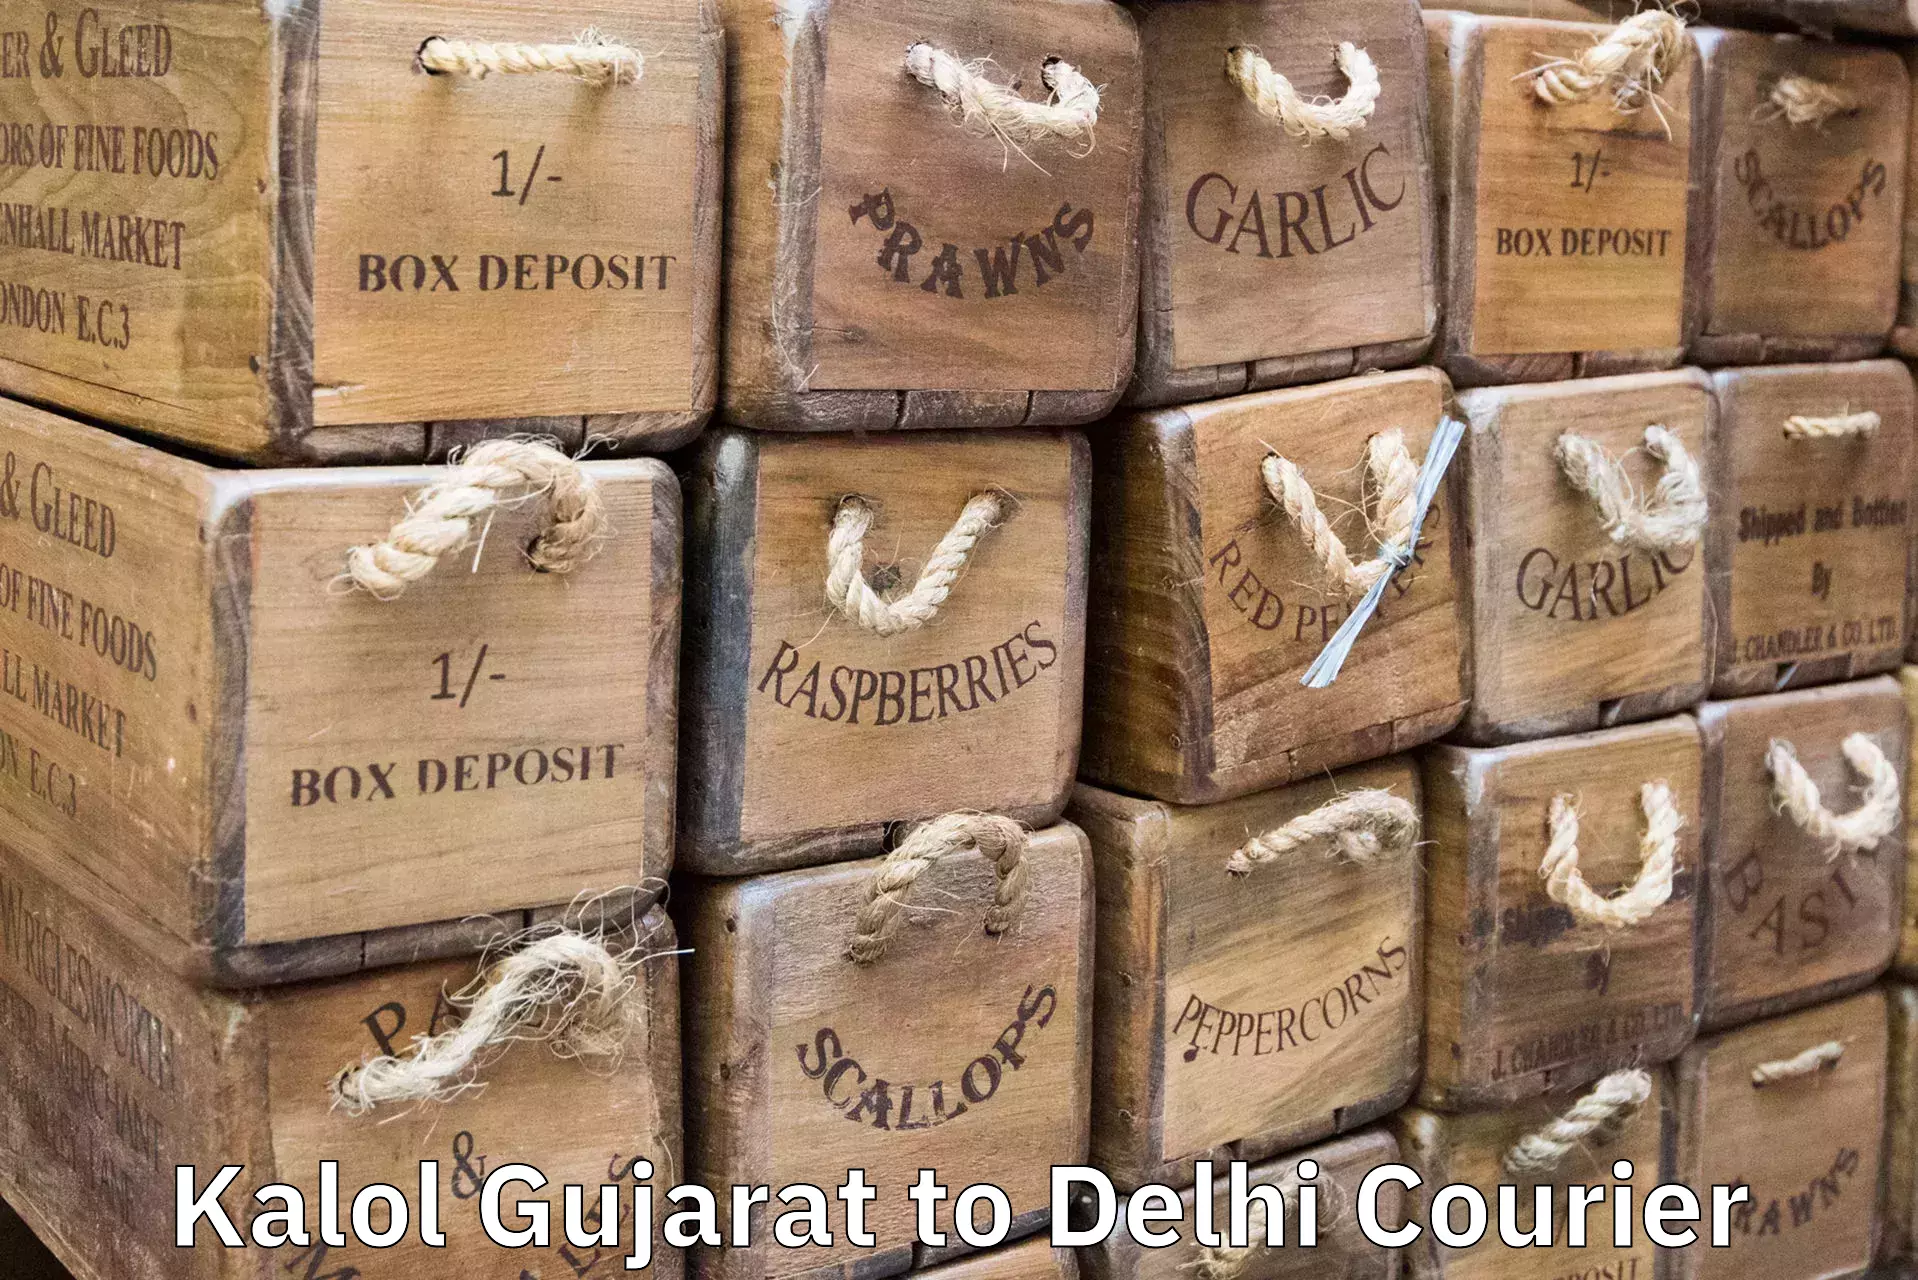 Scheduled baggage courier Kalol Gujarat to Delhi